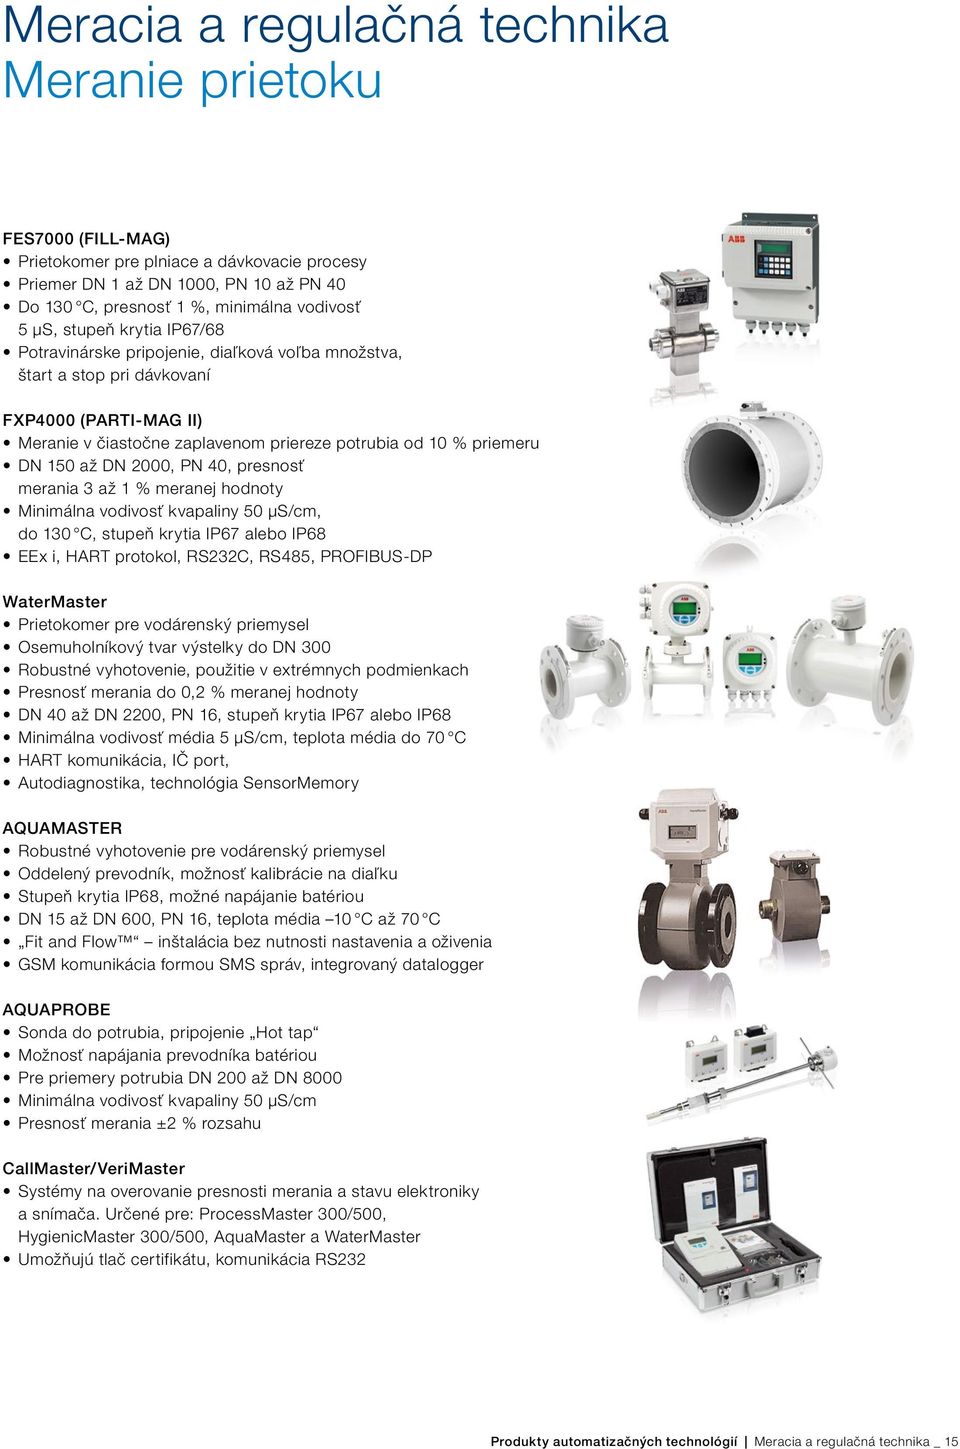 DN 2000, PN 40, presnosť merania 3 až 1 % meranej hodnoty Minimálna vodivosť kvapaliny 50 μs/cm, do 130 C, stupeň krytia IP67 alebo IP68 EEx i, HART protokol, RS232C, RS485, PROFIBUS-DP WaterMaster